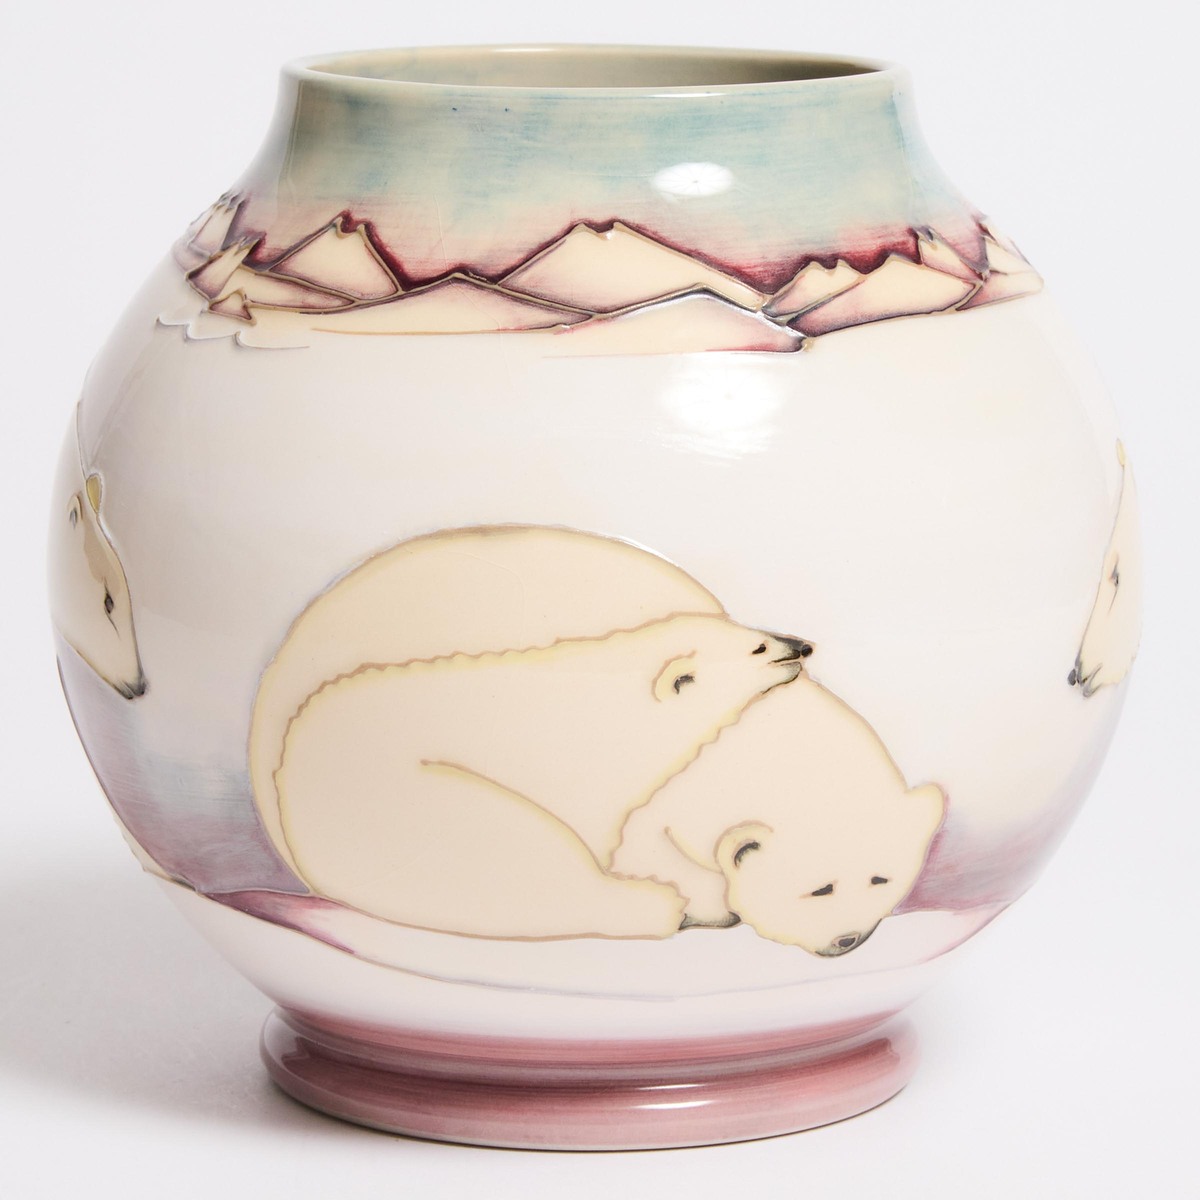 Moorcroft Polar Bear Vase, 8/250, c.1988, height 6.8 in — 17.2 cm